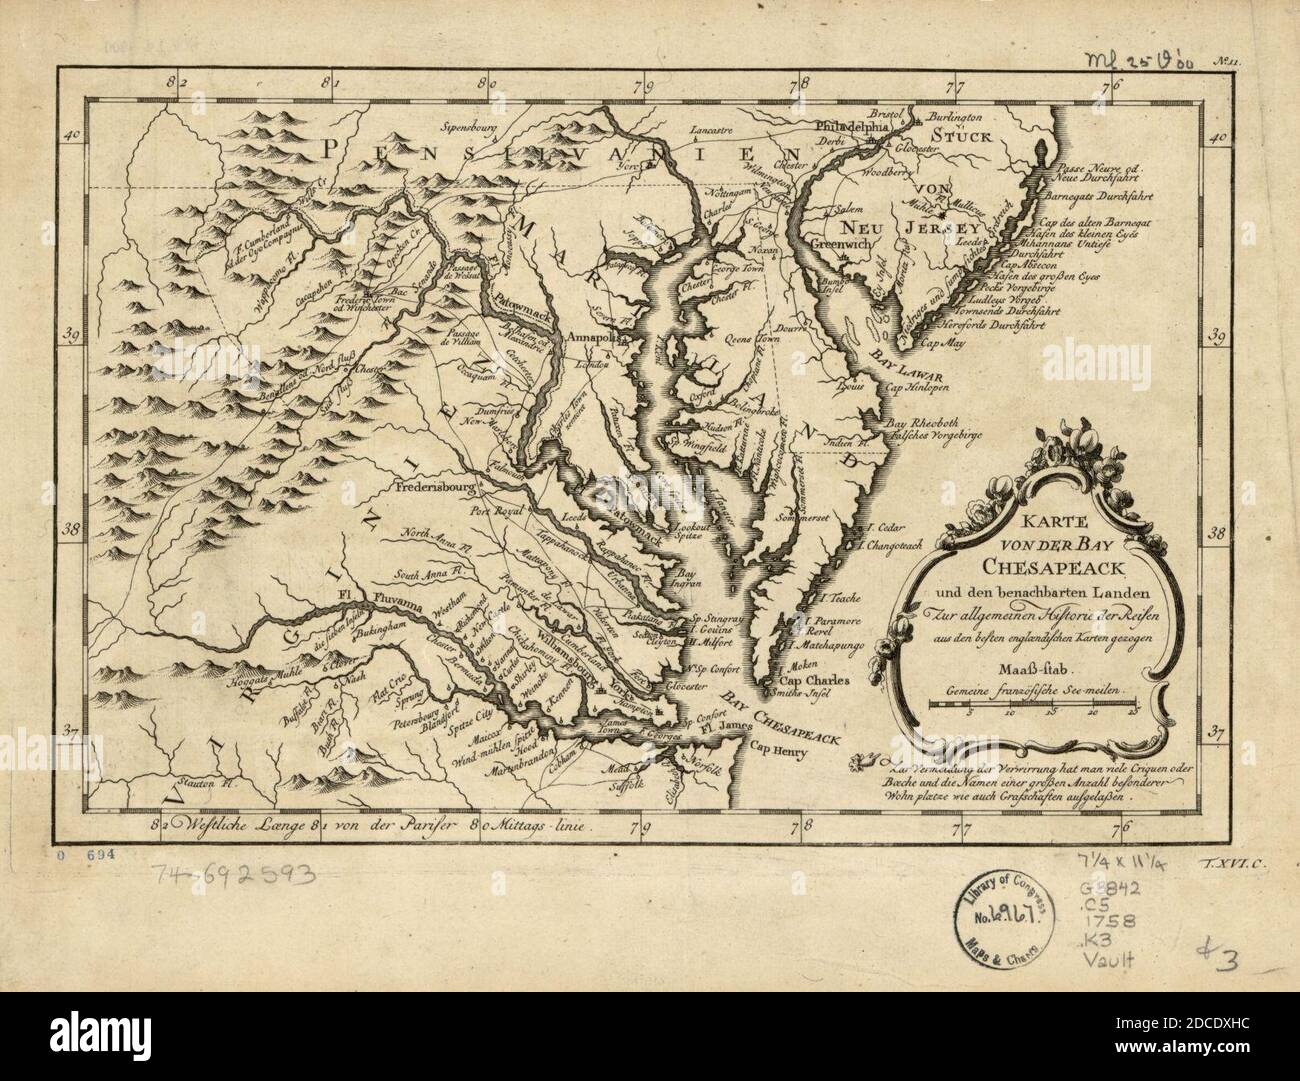 Karte von der Bay Chesapeack und den benachbarten Landen zur Allegemeinen Historie der Reisen aus den besten englændischen Karten gezogen. Stock Photo